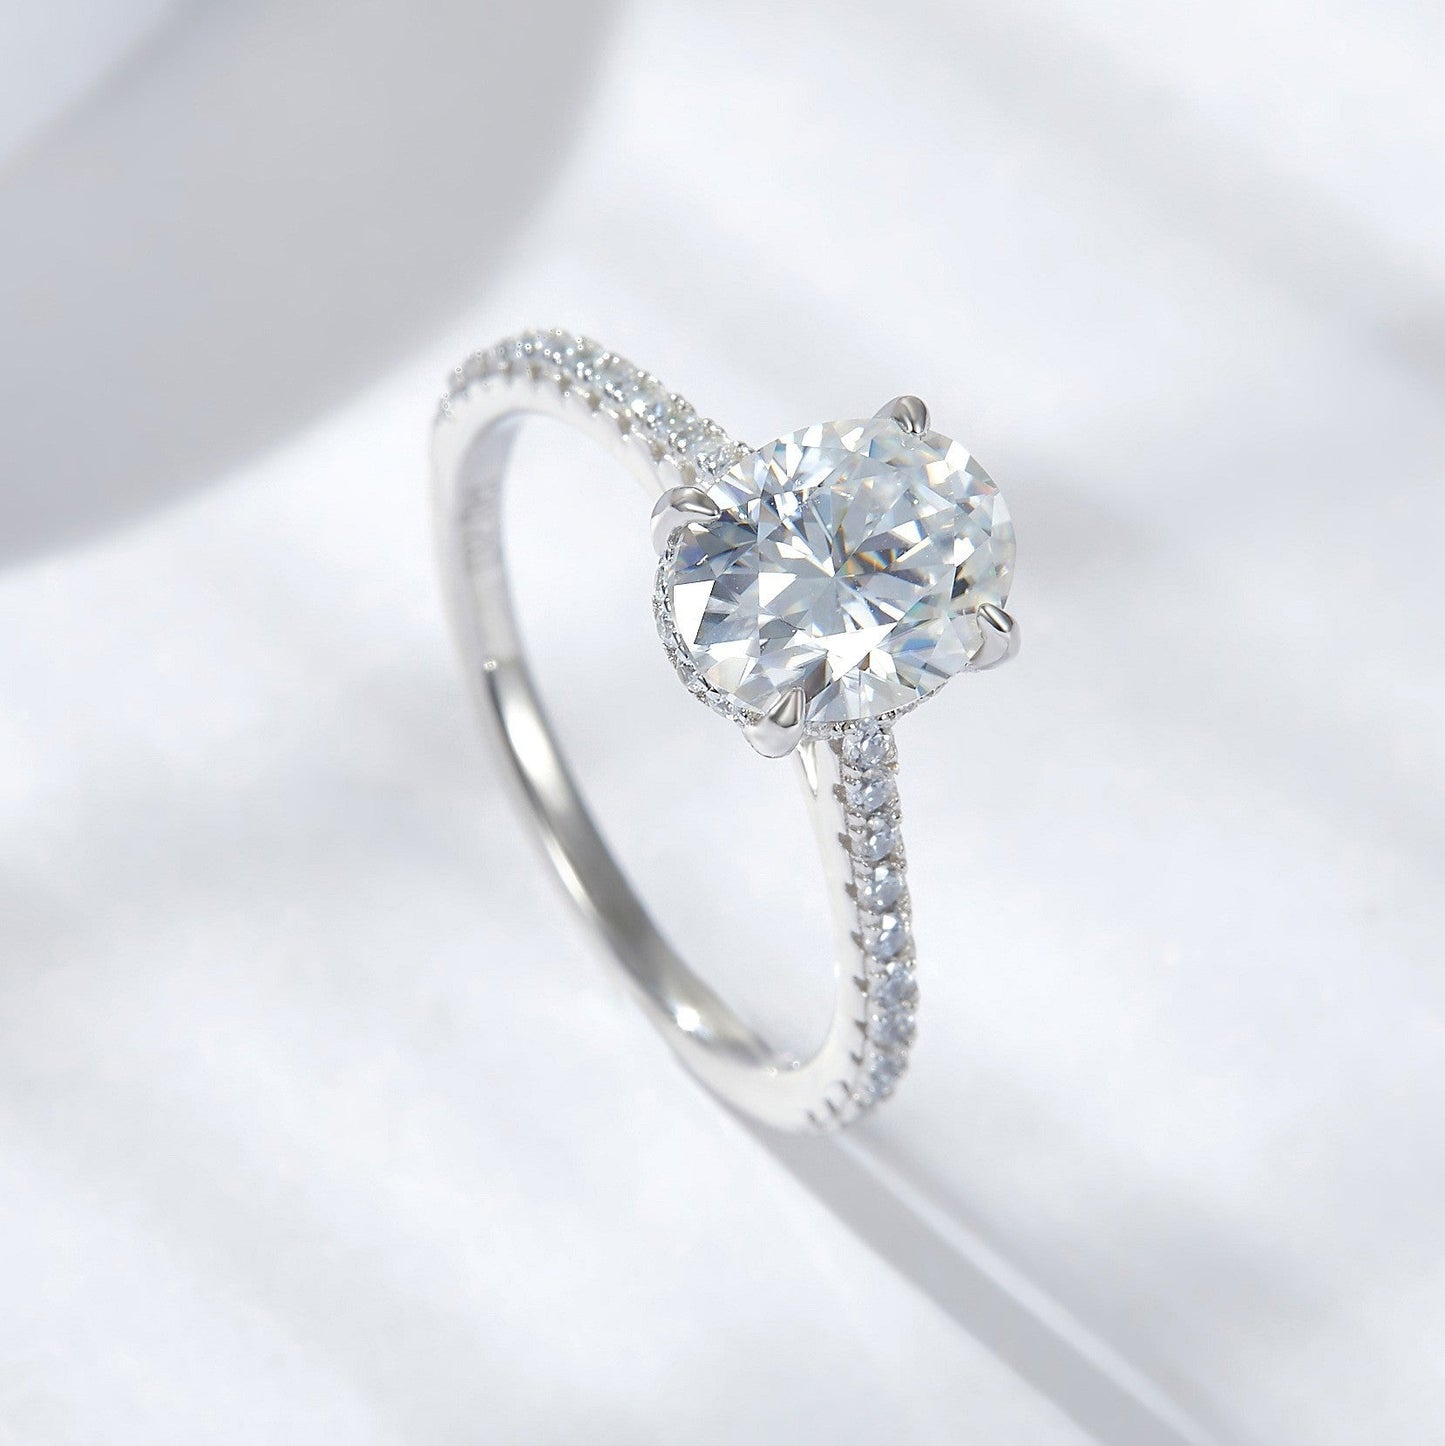 Diamond Wedding Ring 4 Claw 2Ct Oval Cut